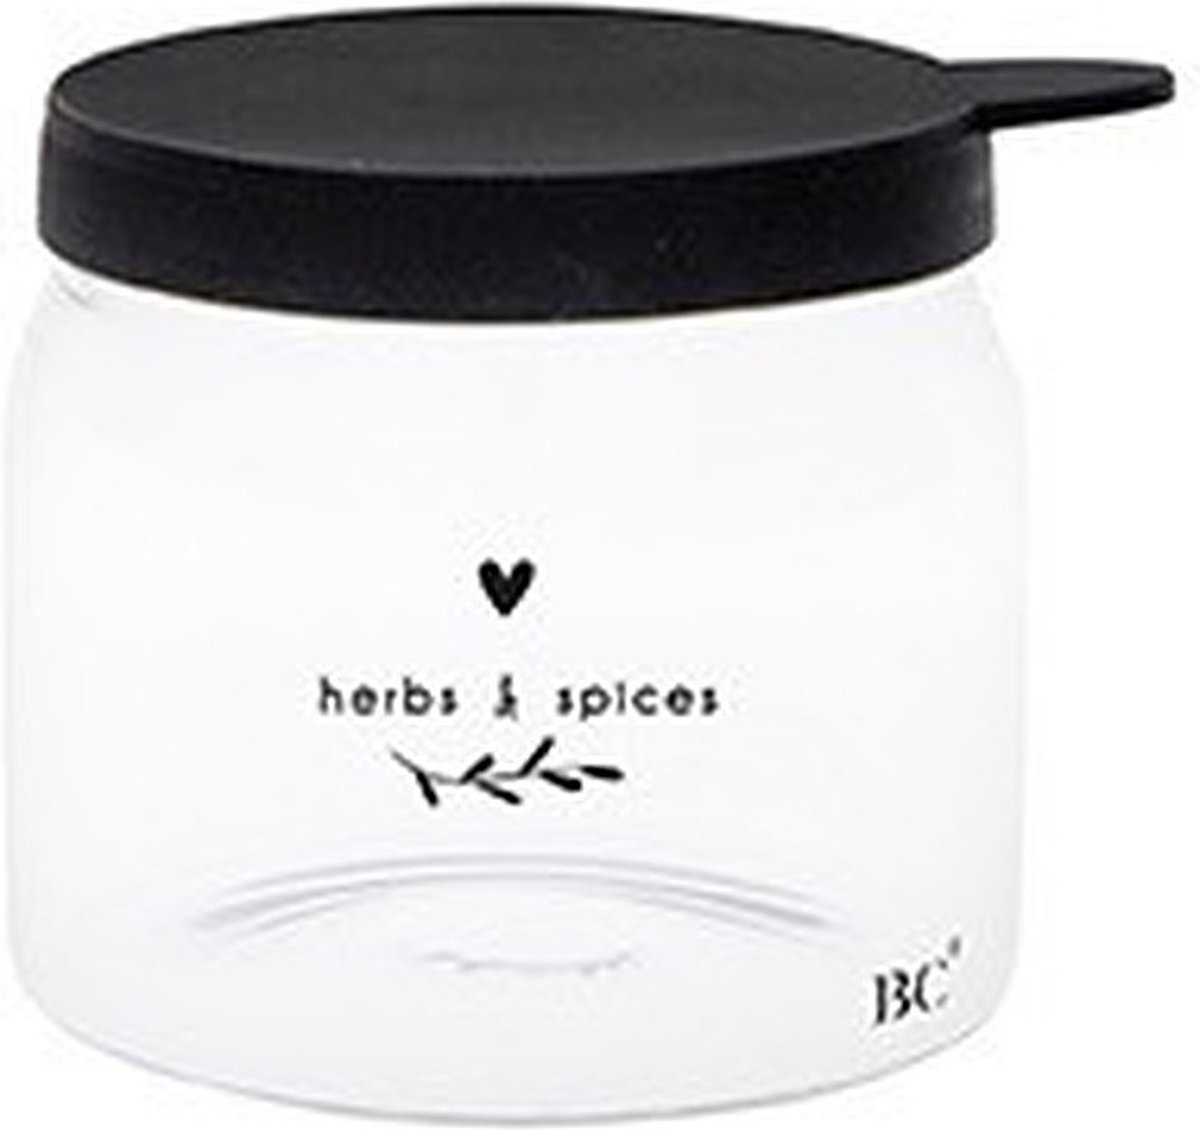 Glazen voorraadpot XXS - Herbs and spices